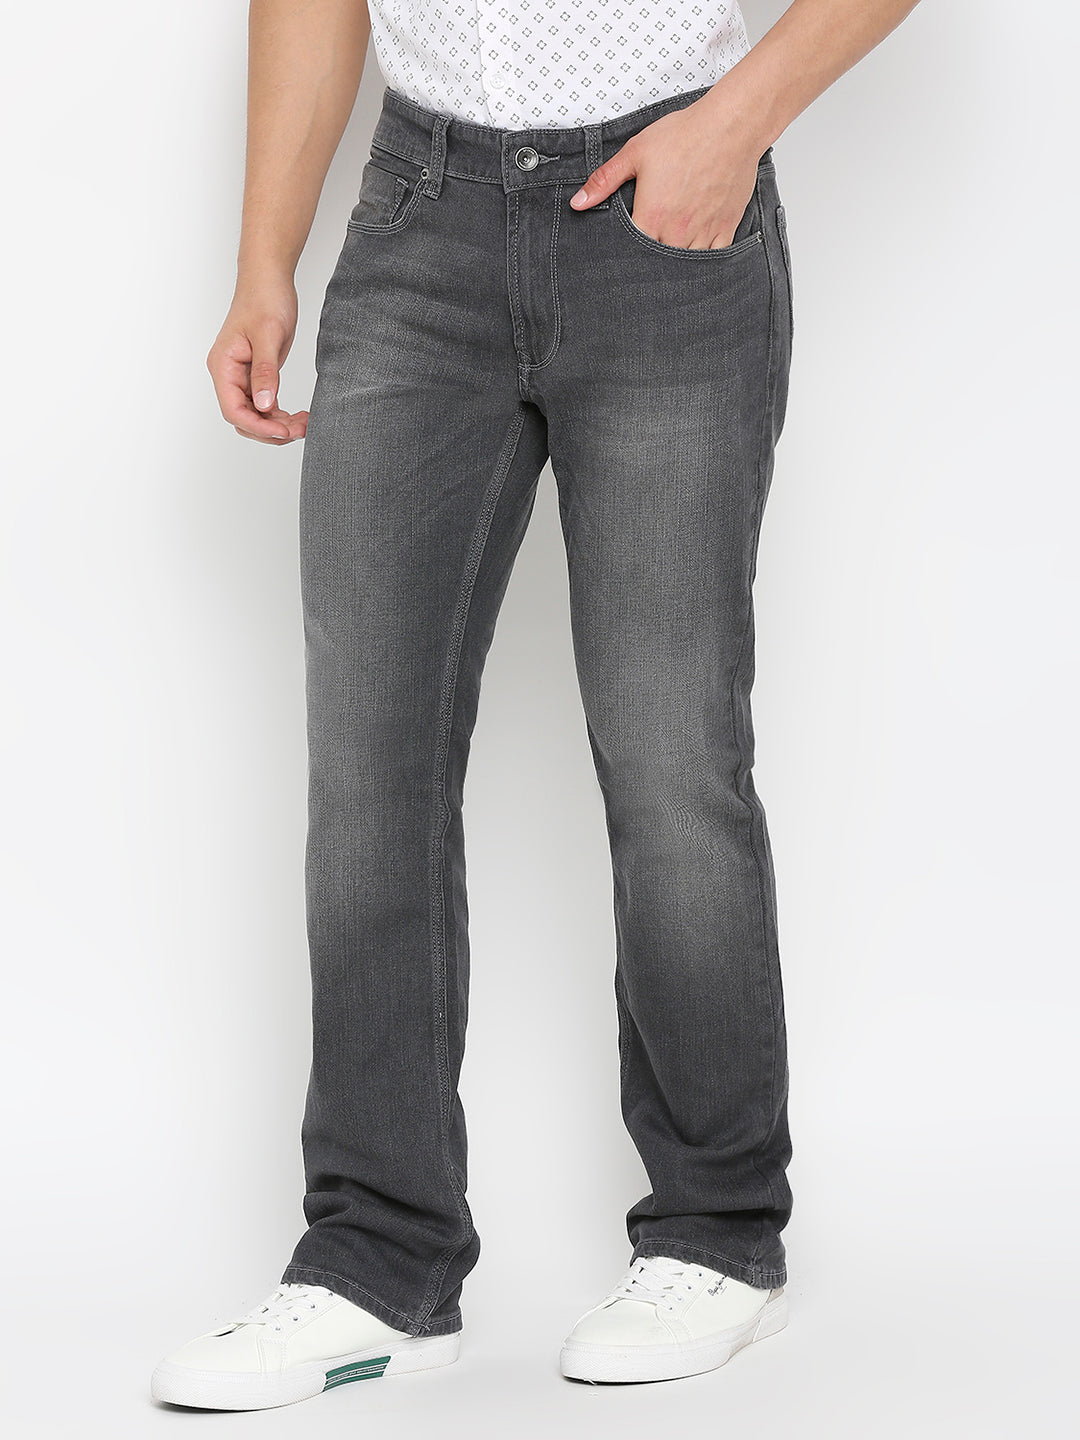 Spykar Dark Grey Cotton Regular Fit Regular Length Jeans For Men (Rafter)